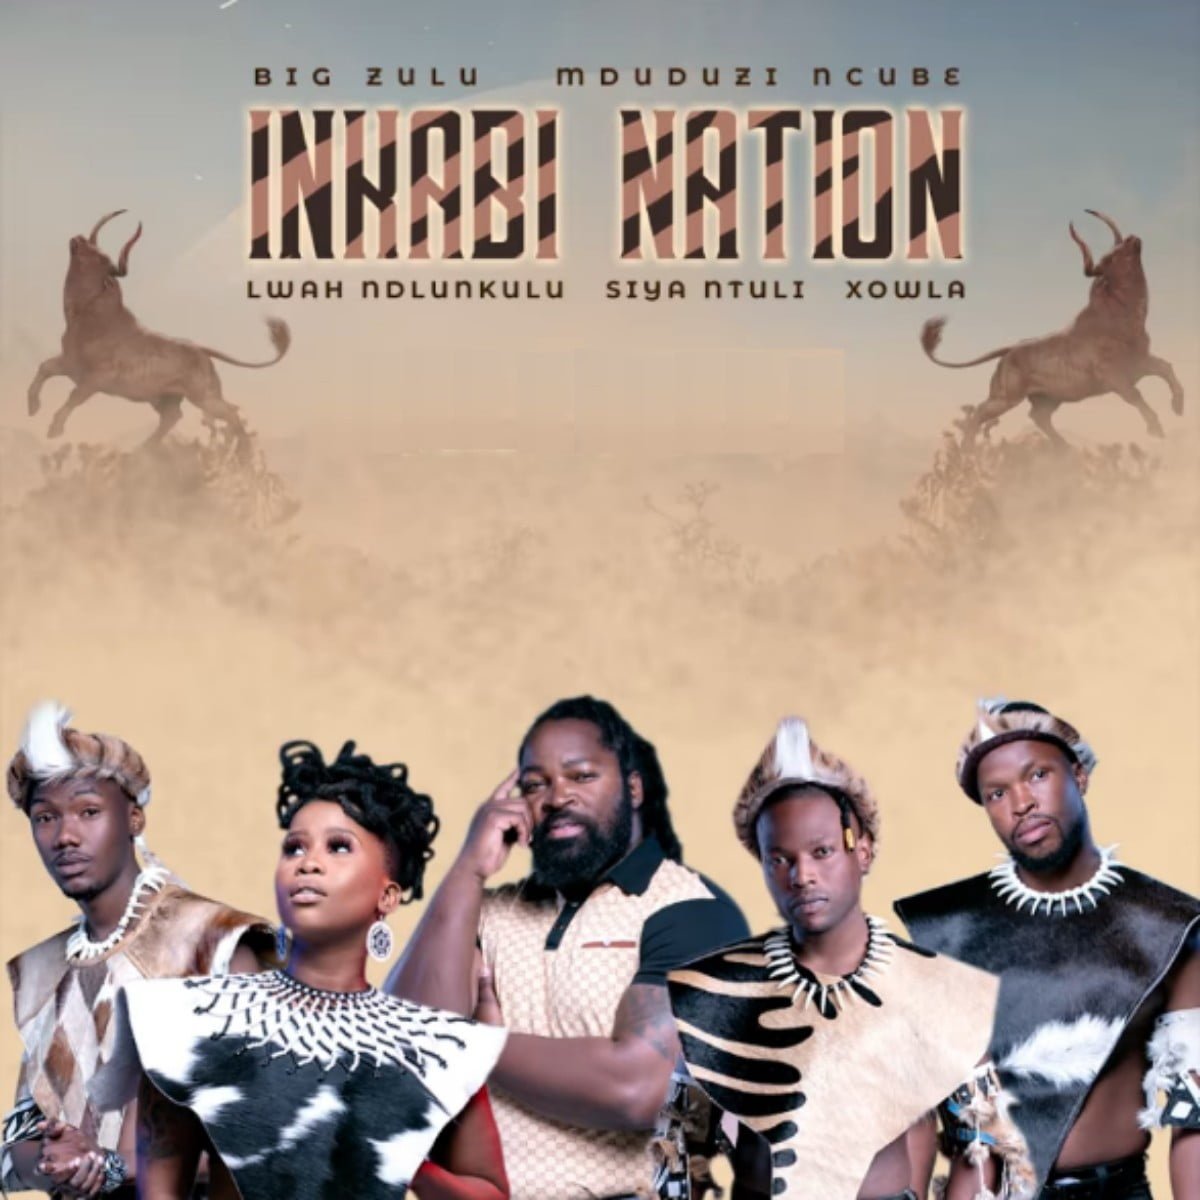 Big Zulu – Kuyokhanya ft. Siya Ntuli, Mduduzi Ncube mp3 download free lyrics